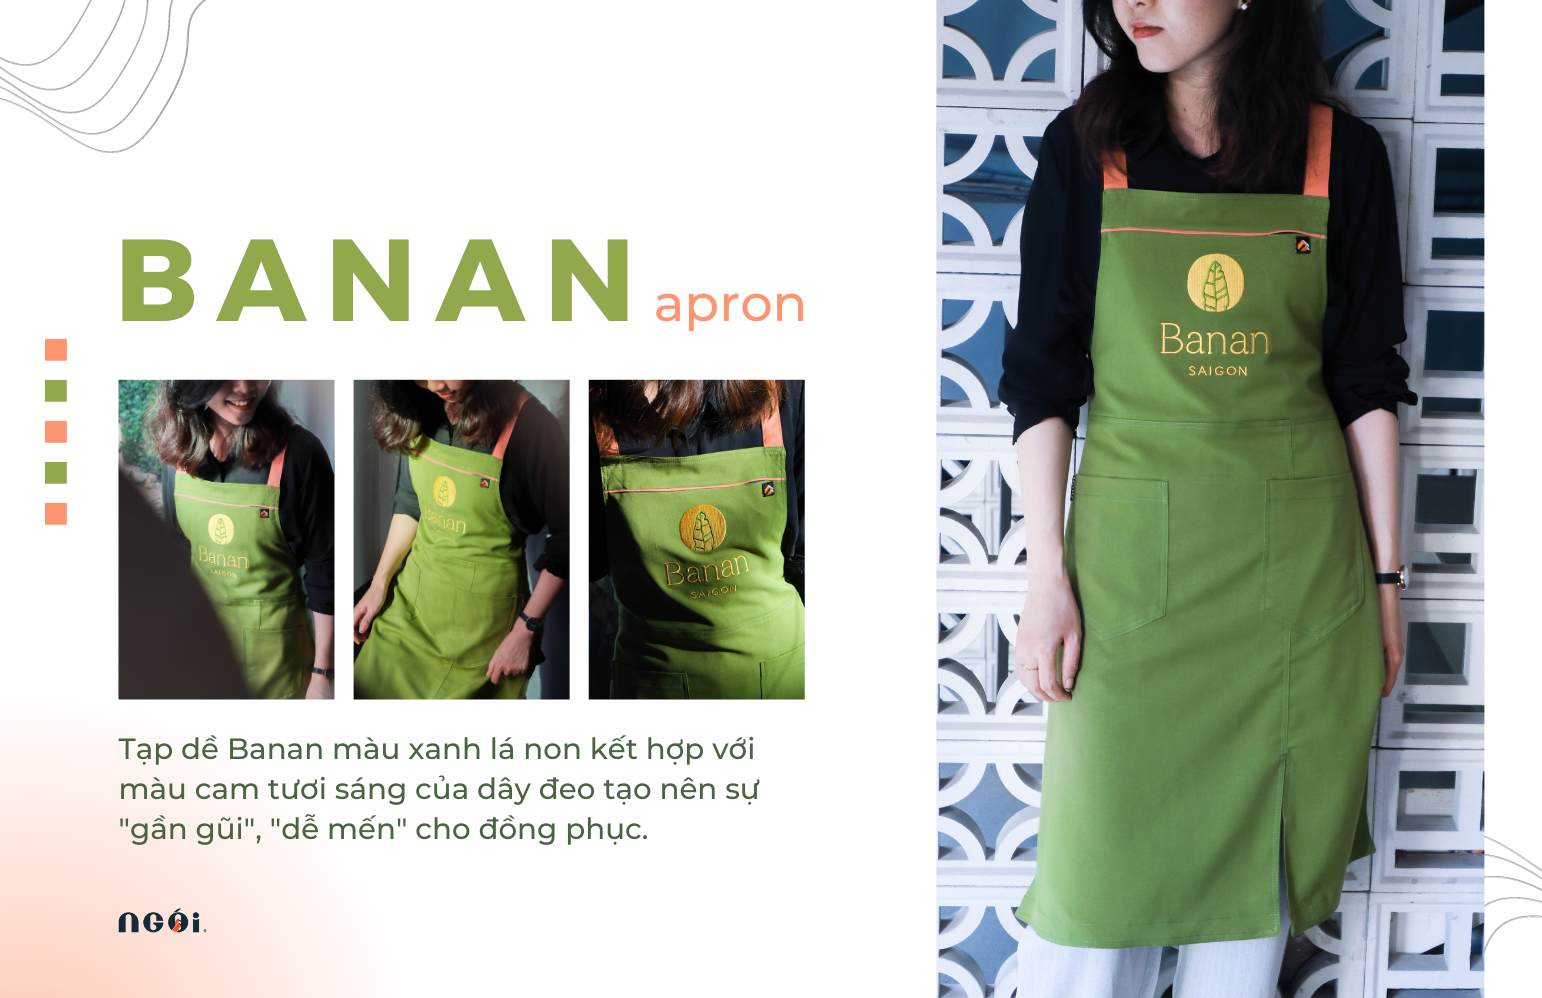 Văn hoá đồng phục từ tạp dề đồng phục Banan - Blog NGÓI